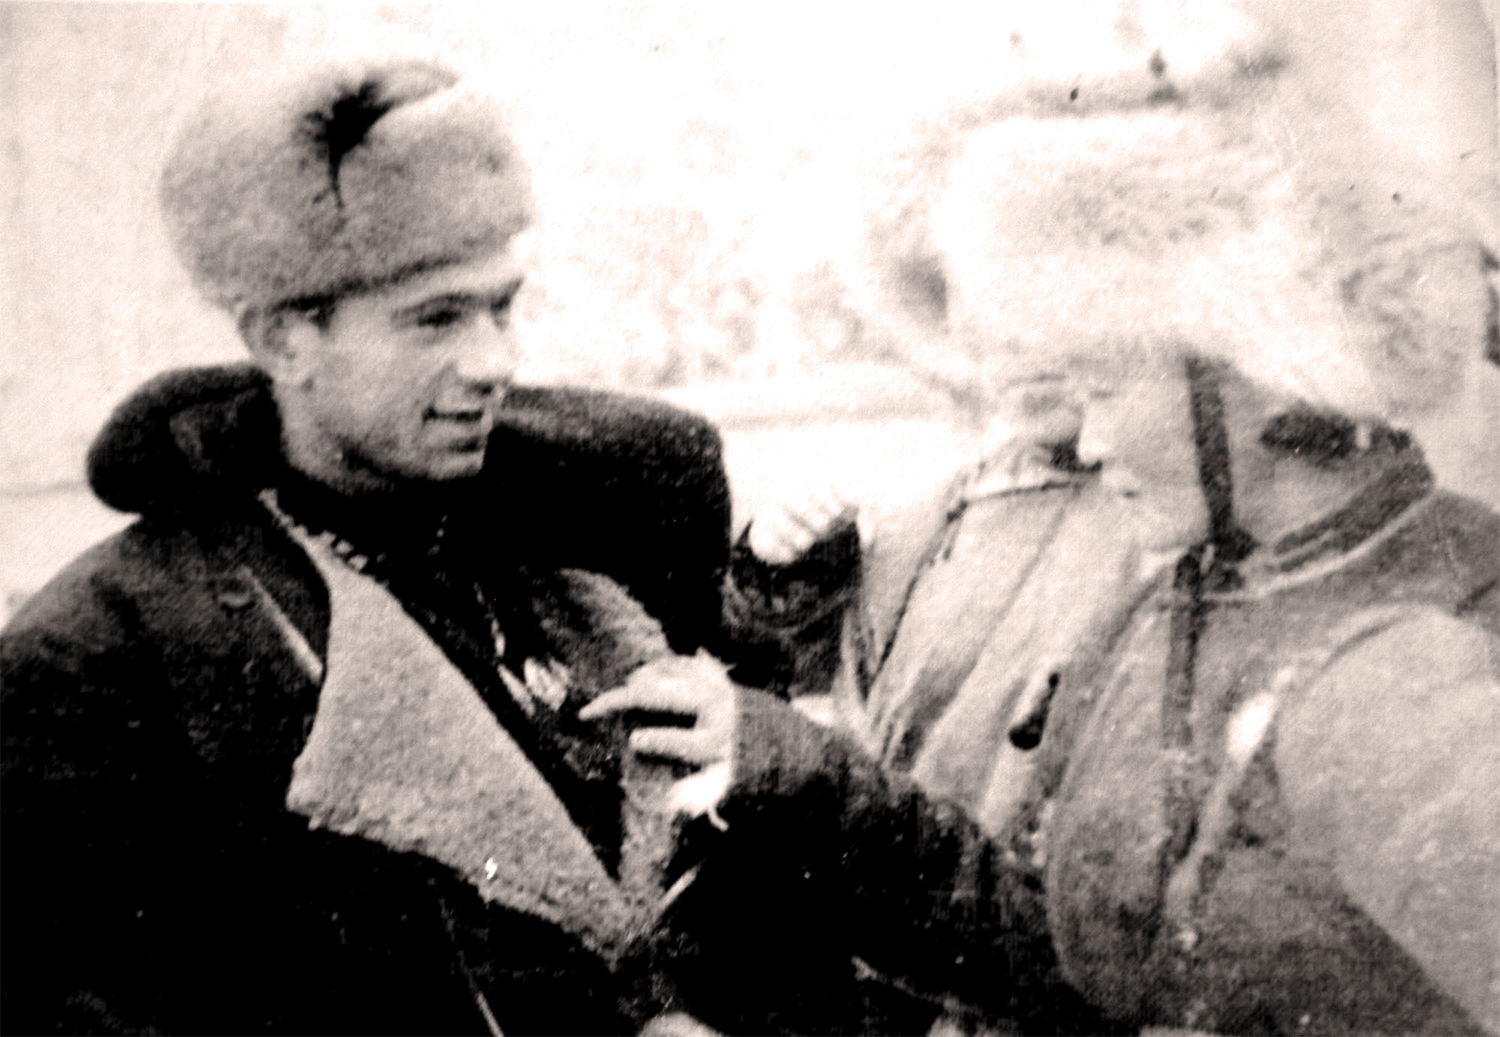 ЗХУ-ын баатар В.Носов Монгол Улсын малчин С.Цэгмэд нар (1943 он). В.Носов 16 настай гвардийн цэрэг байхдаа С.Цэгмэд гуайгаас бэлэг гардан авчээ.